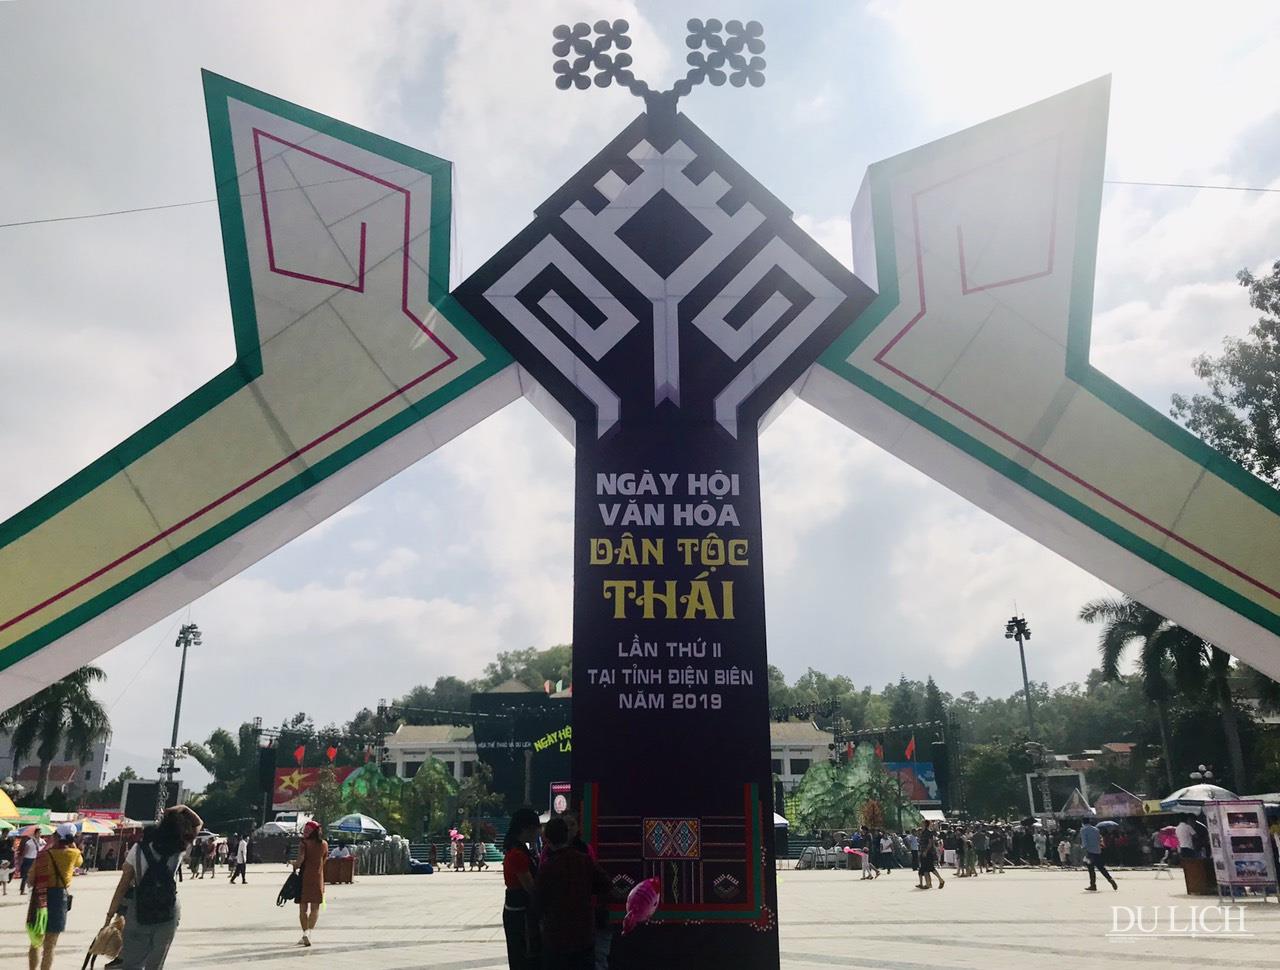 Ngay từ cổng chào của Ngày hội đã thể hiện trang trí đậm nét đồng bào Thái với “Khau cút” - biểu tượng văn hóa độc đáo trên nhà sàn của người Thái đen Tây Bắc